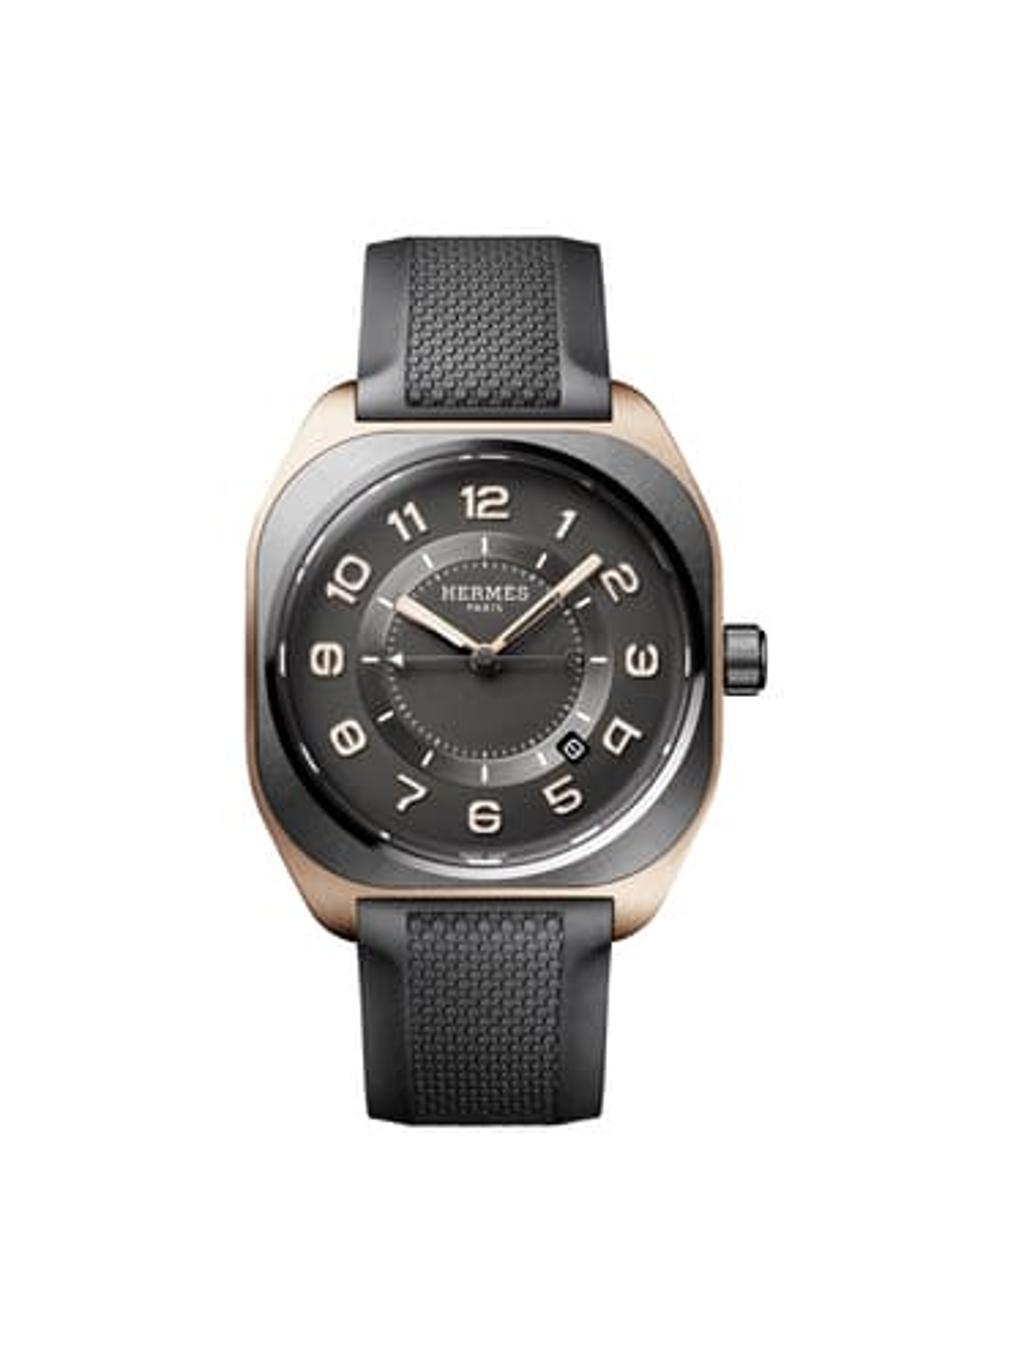  首款採用玫瑰金貴金屬材質的Hermès H08腕錶透過搭配鈦金屬，延續其輕量舒適的運動及都會風格，但是增添其高貴優雅氣質。 圖／愛馬仕提供